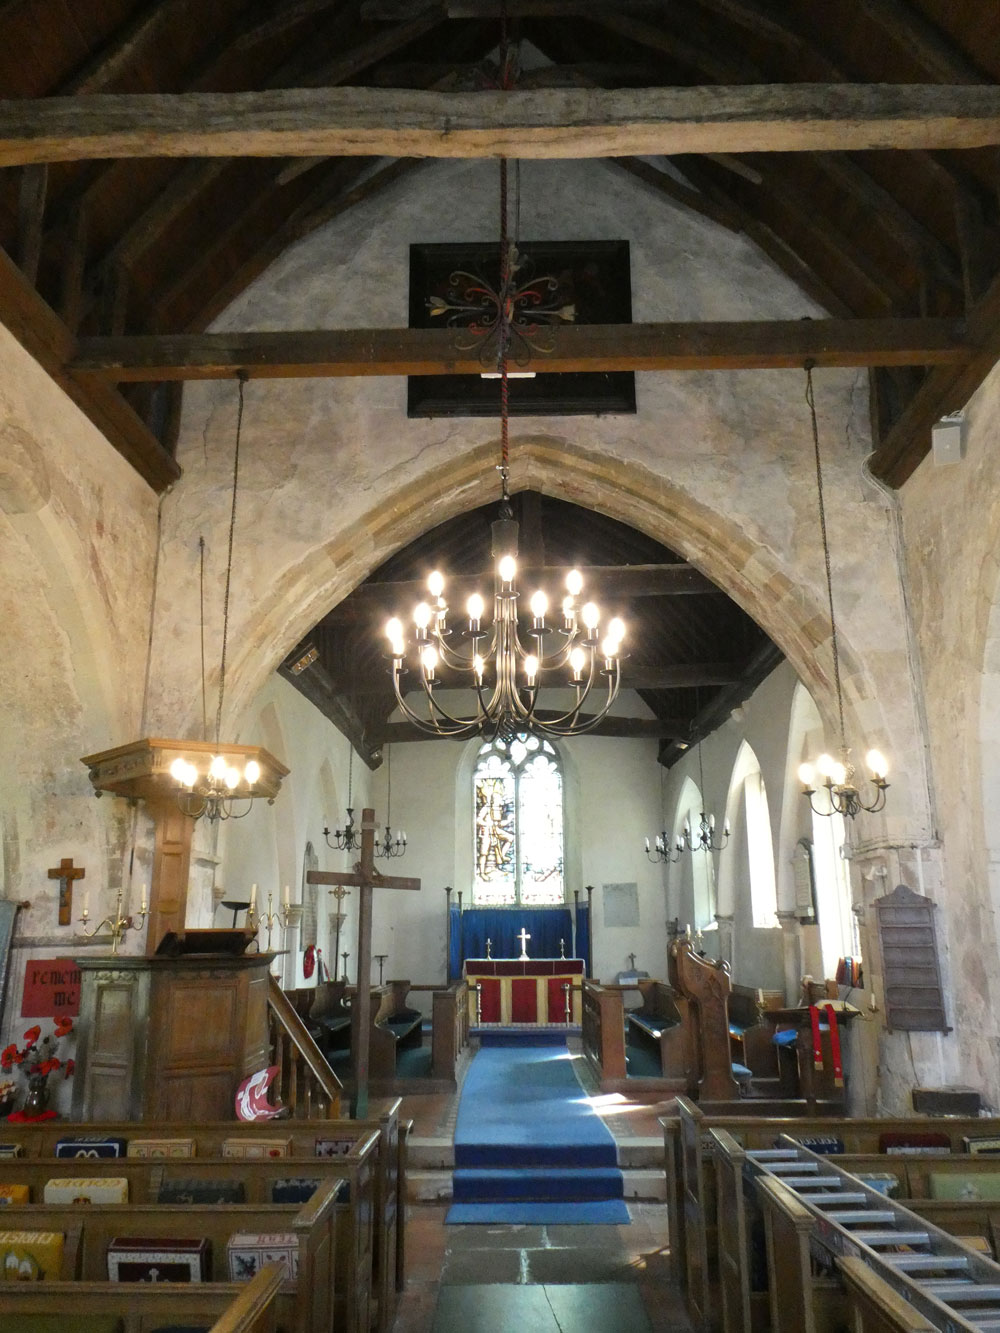 Lower Halstow - St Margaret's magnificent chandelier